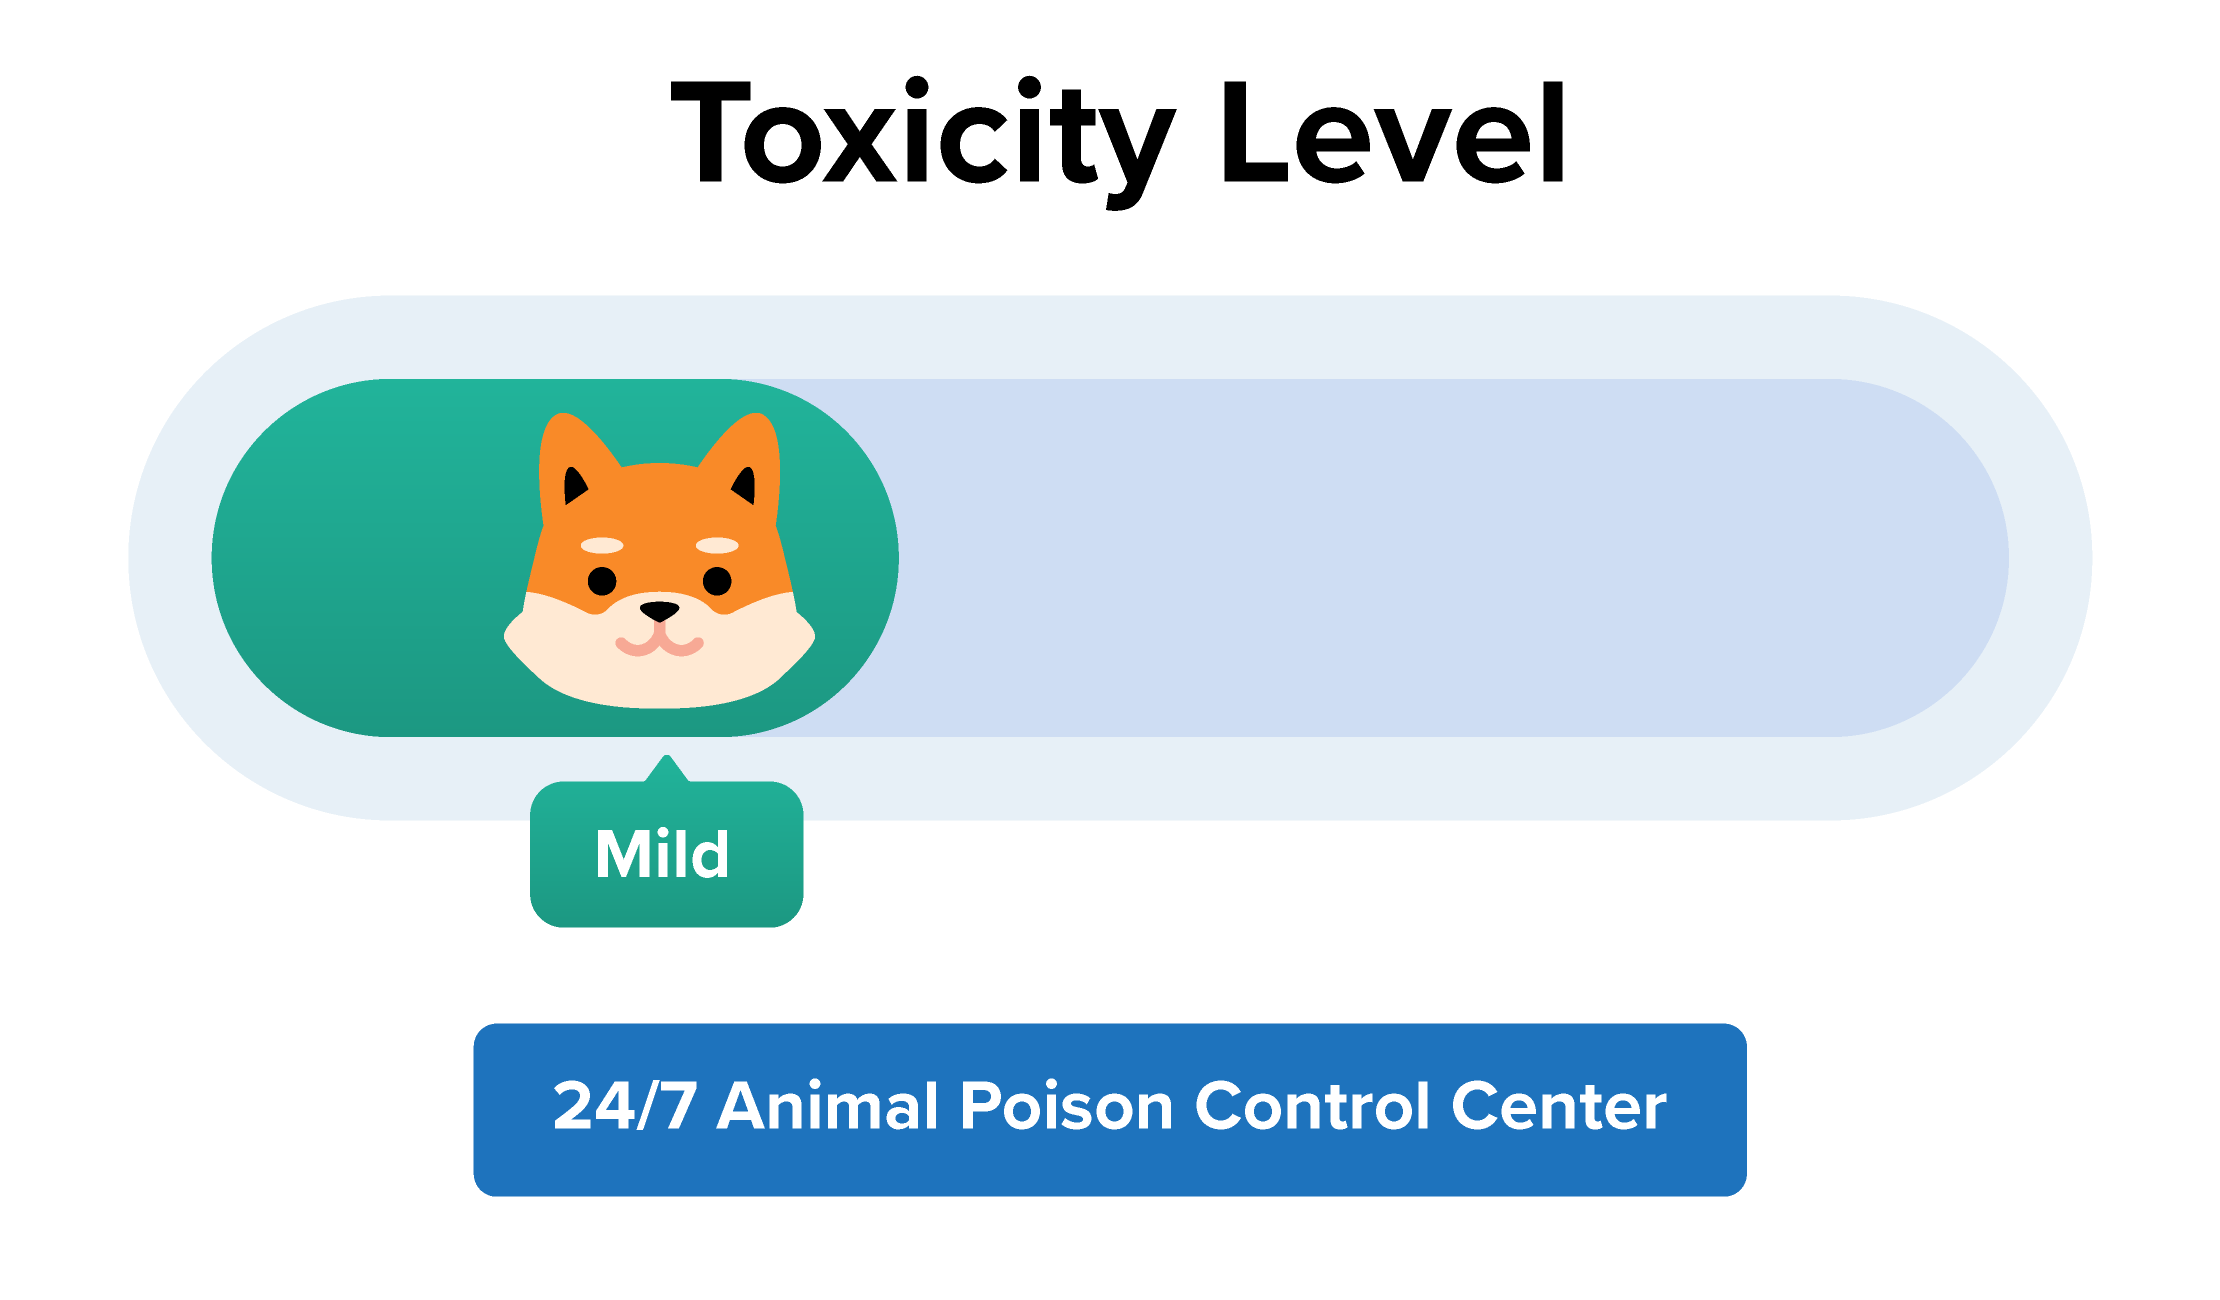 Dog Mild Toxicity Level